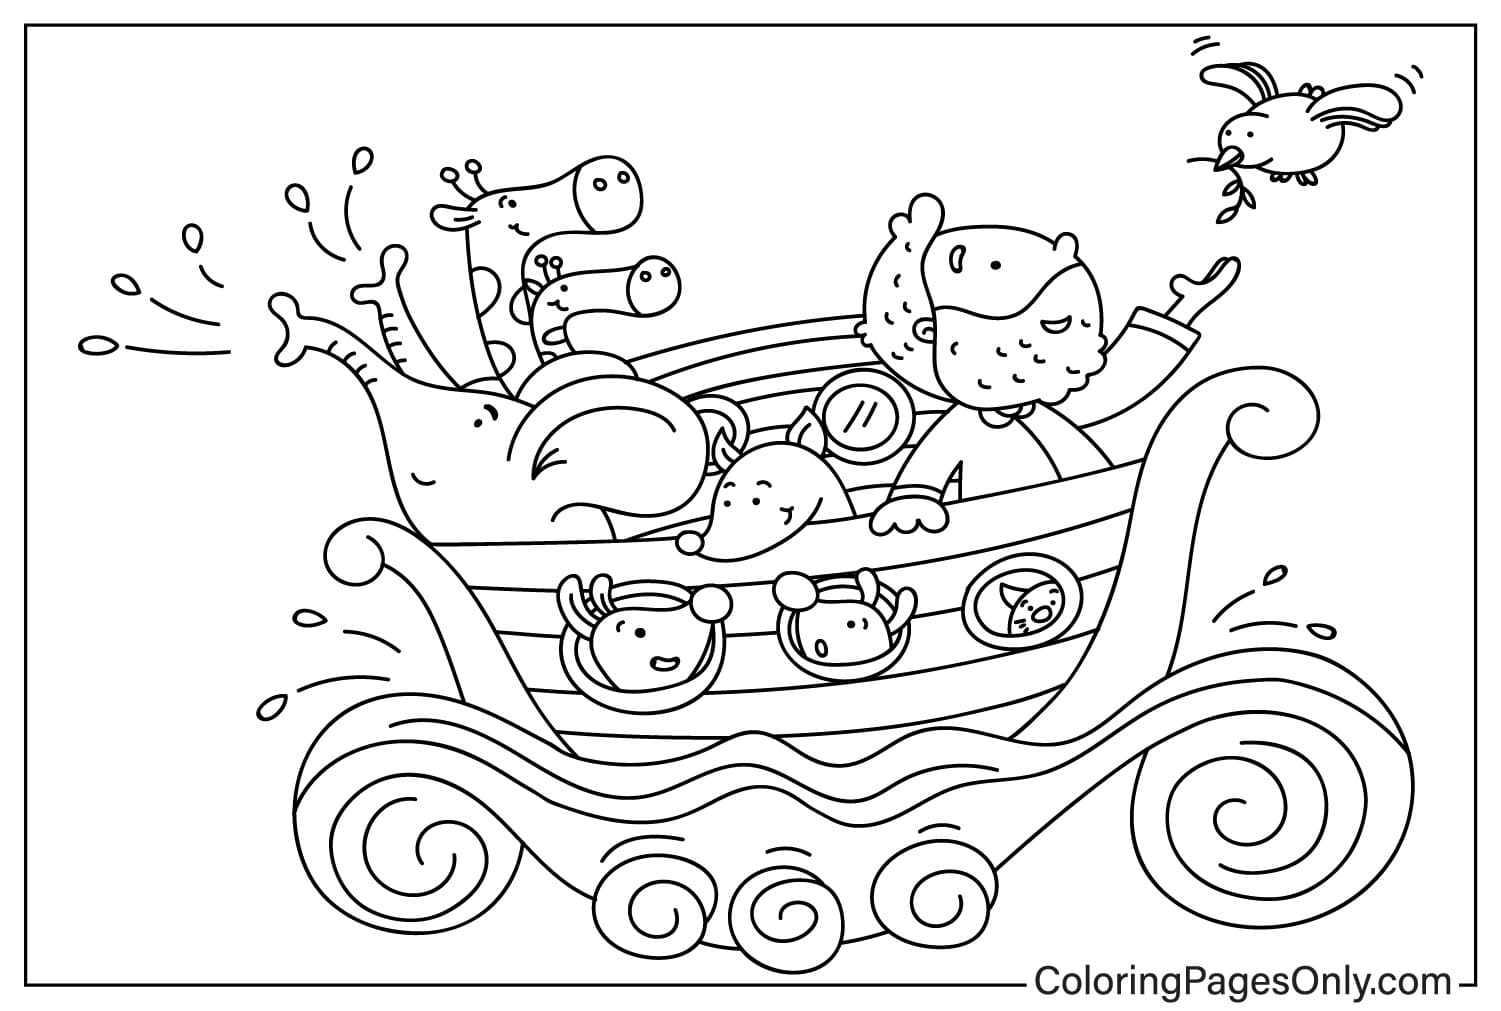 Página sencilla para colorear del Arca de Noé antes del diluvio para niños en edad preescolar del Arca de Noé